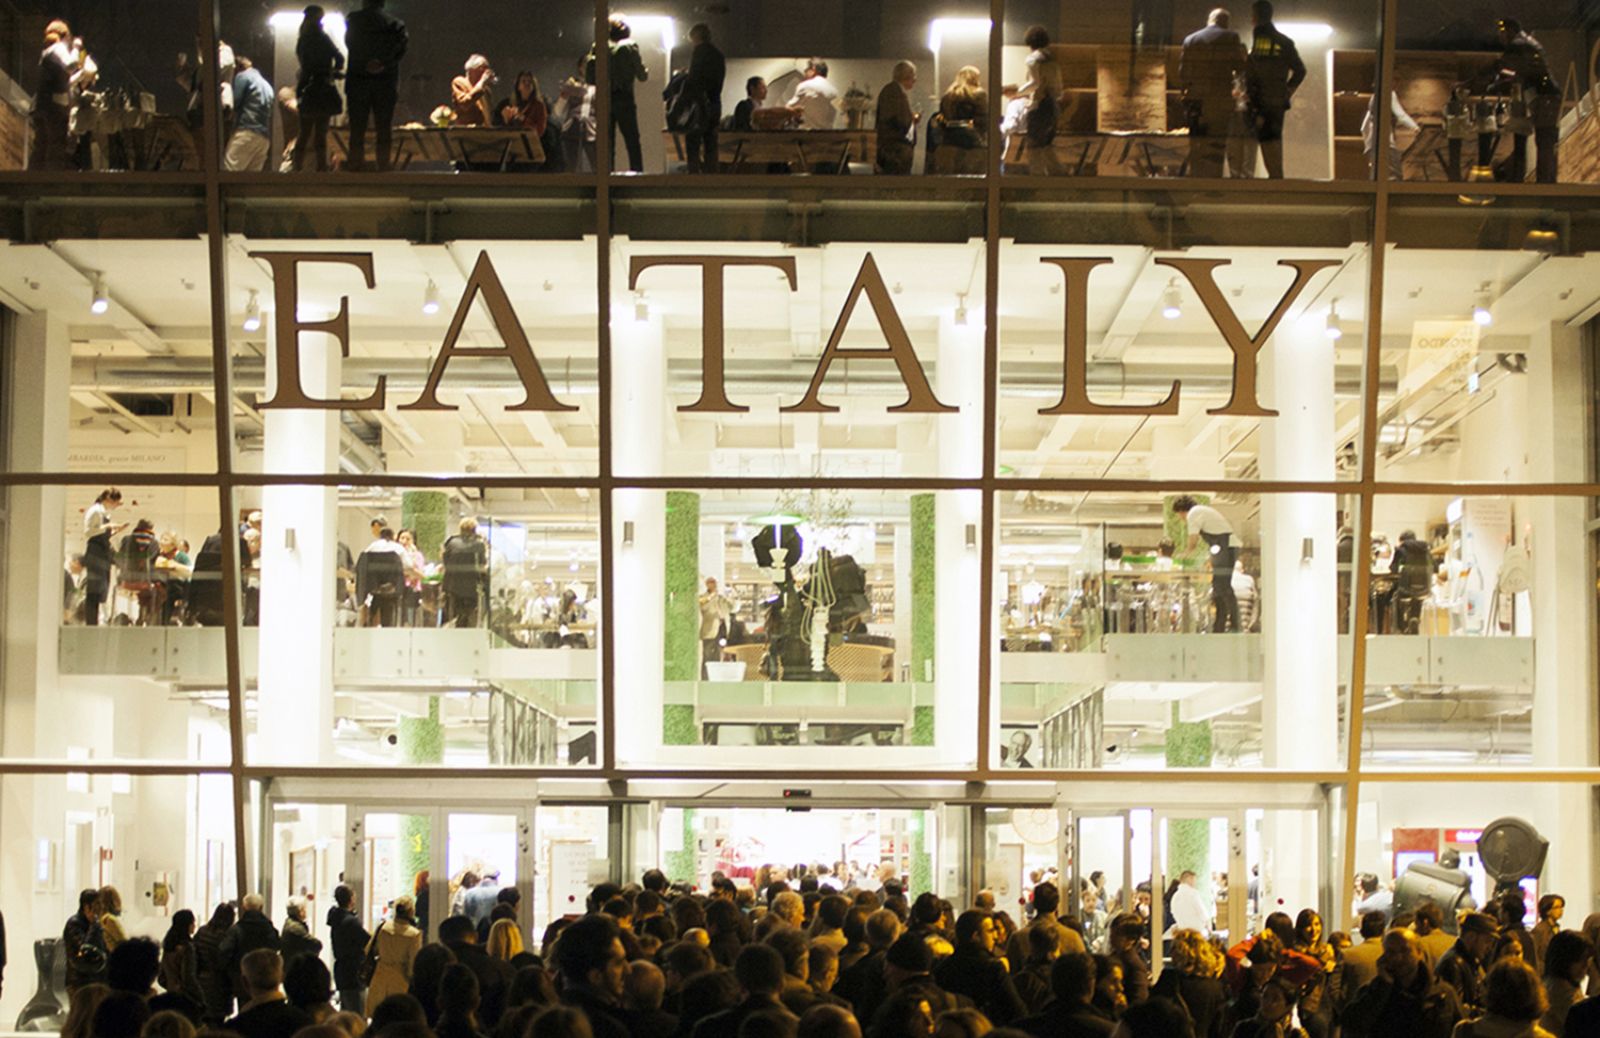 Anniversari: Eataly festeggia 10 anni dalla prima apertura